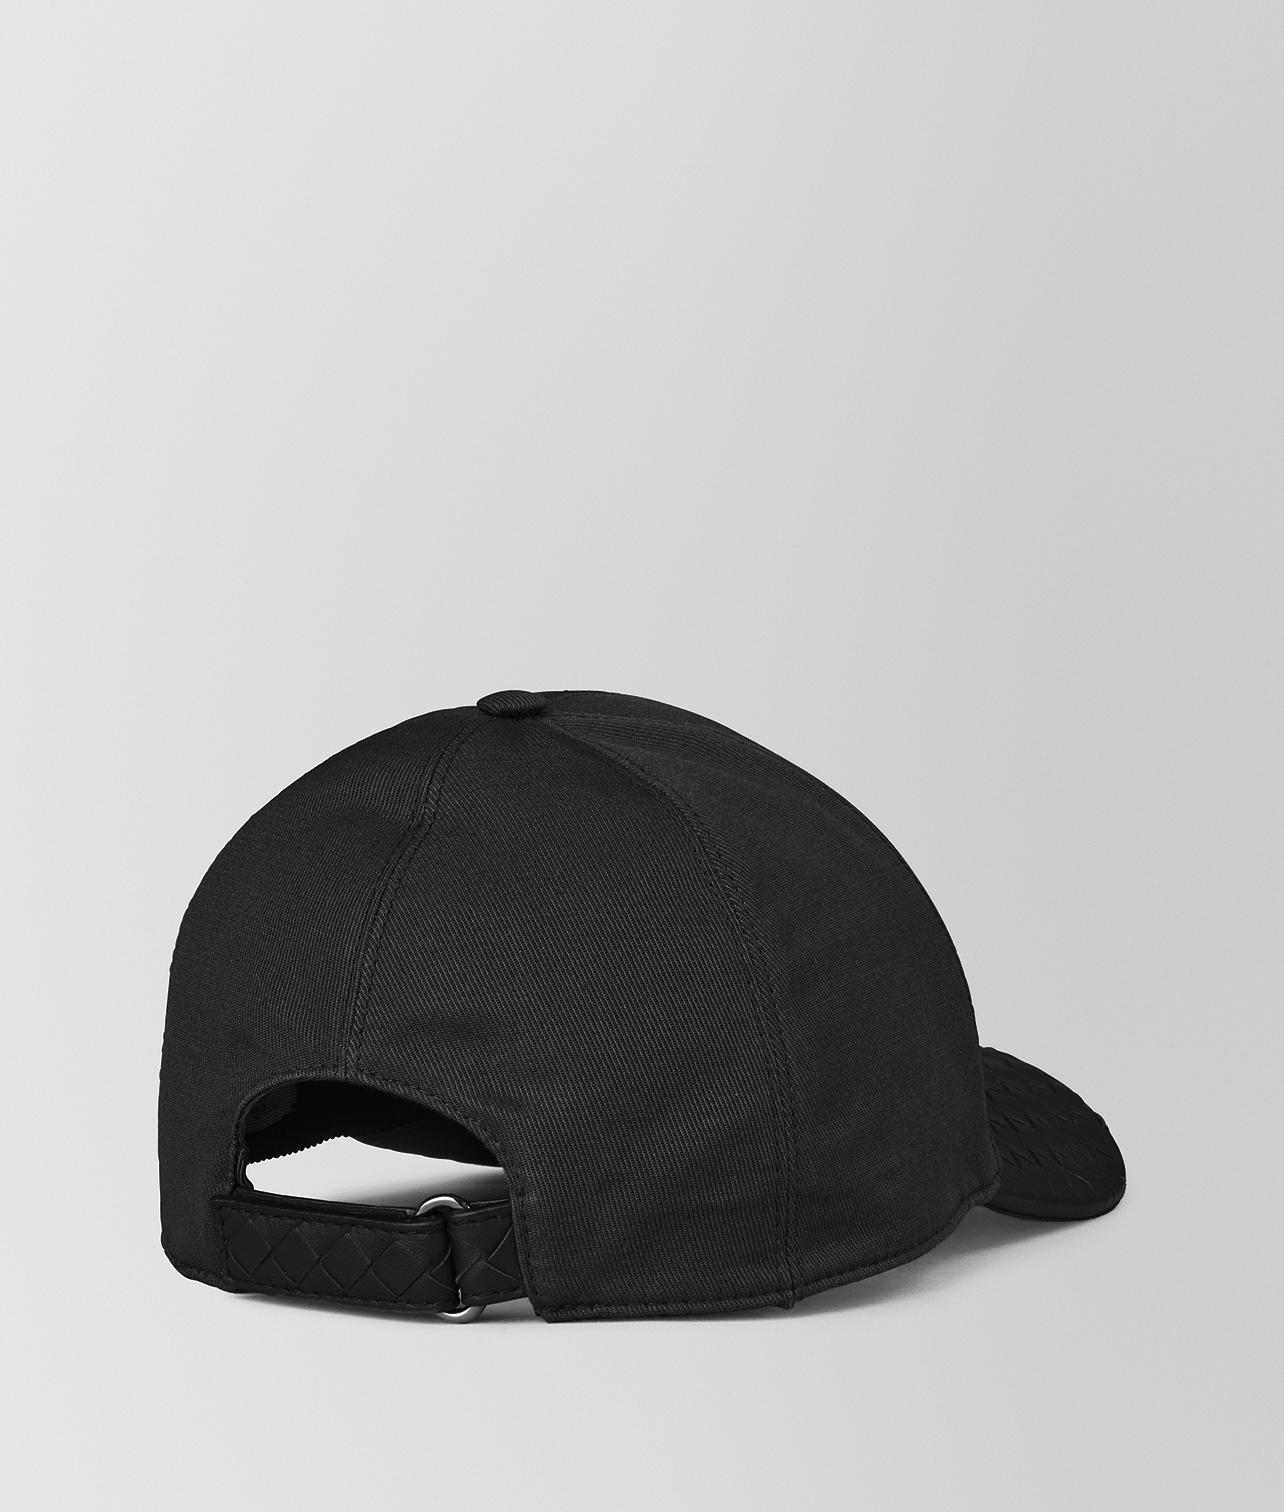 Bottega Veneta Nero Cotton/nappa Hat in Black for Men - Lyst